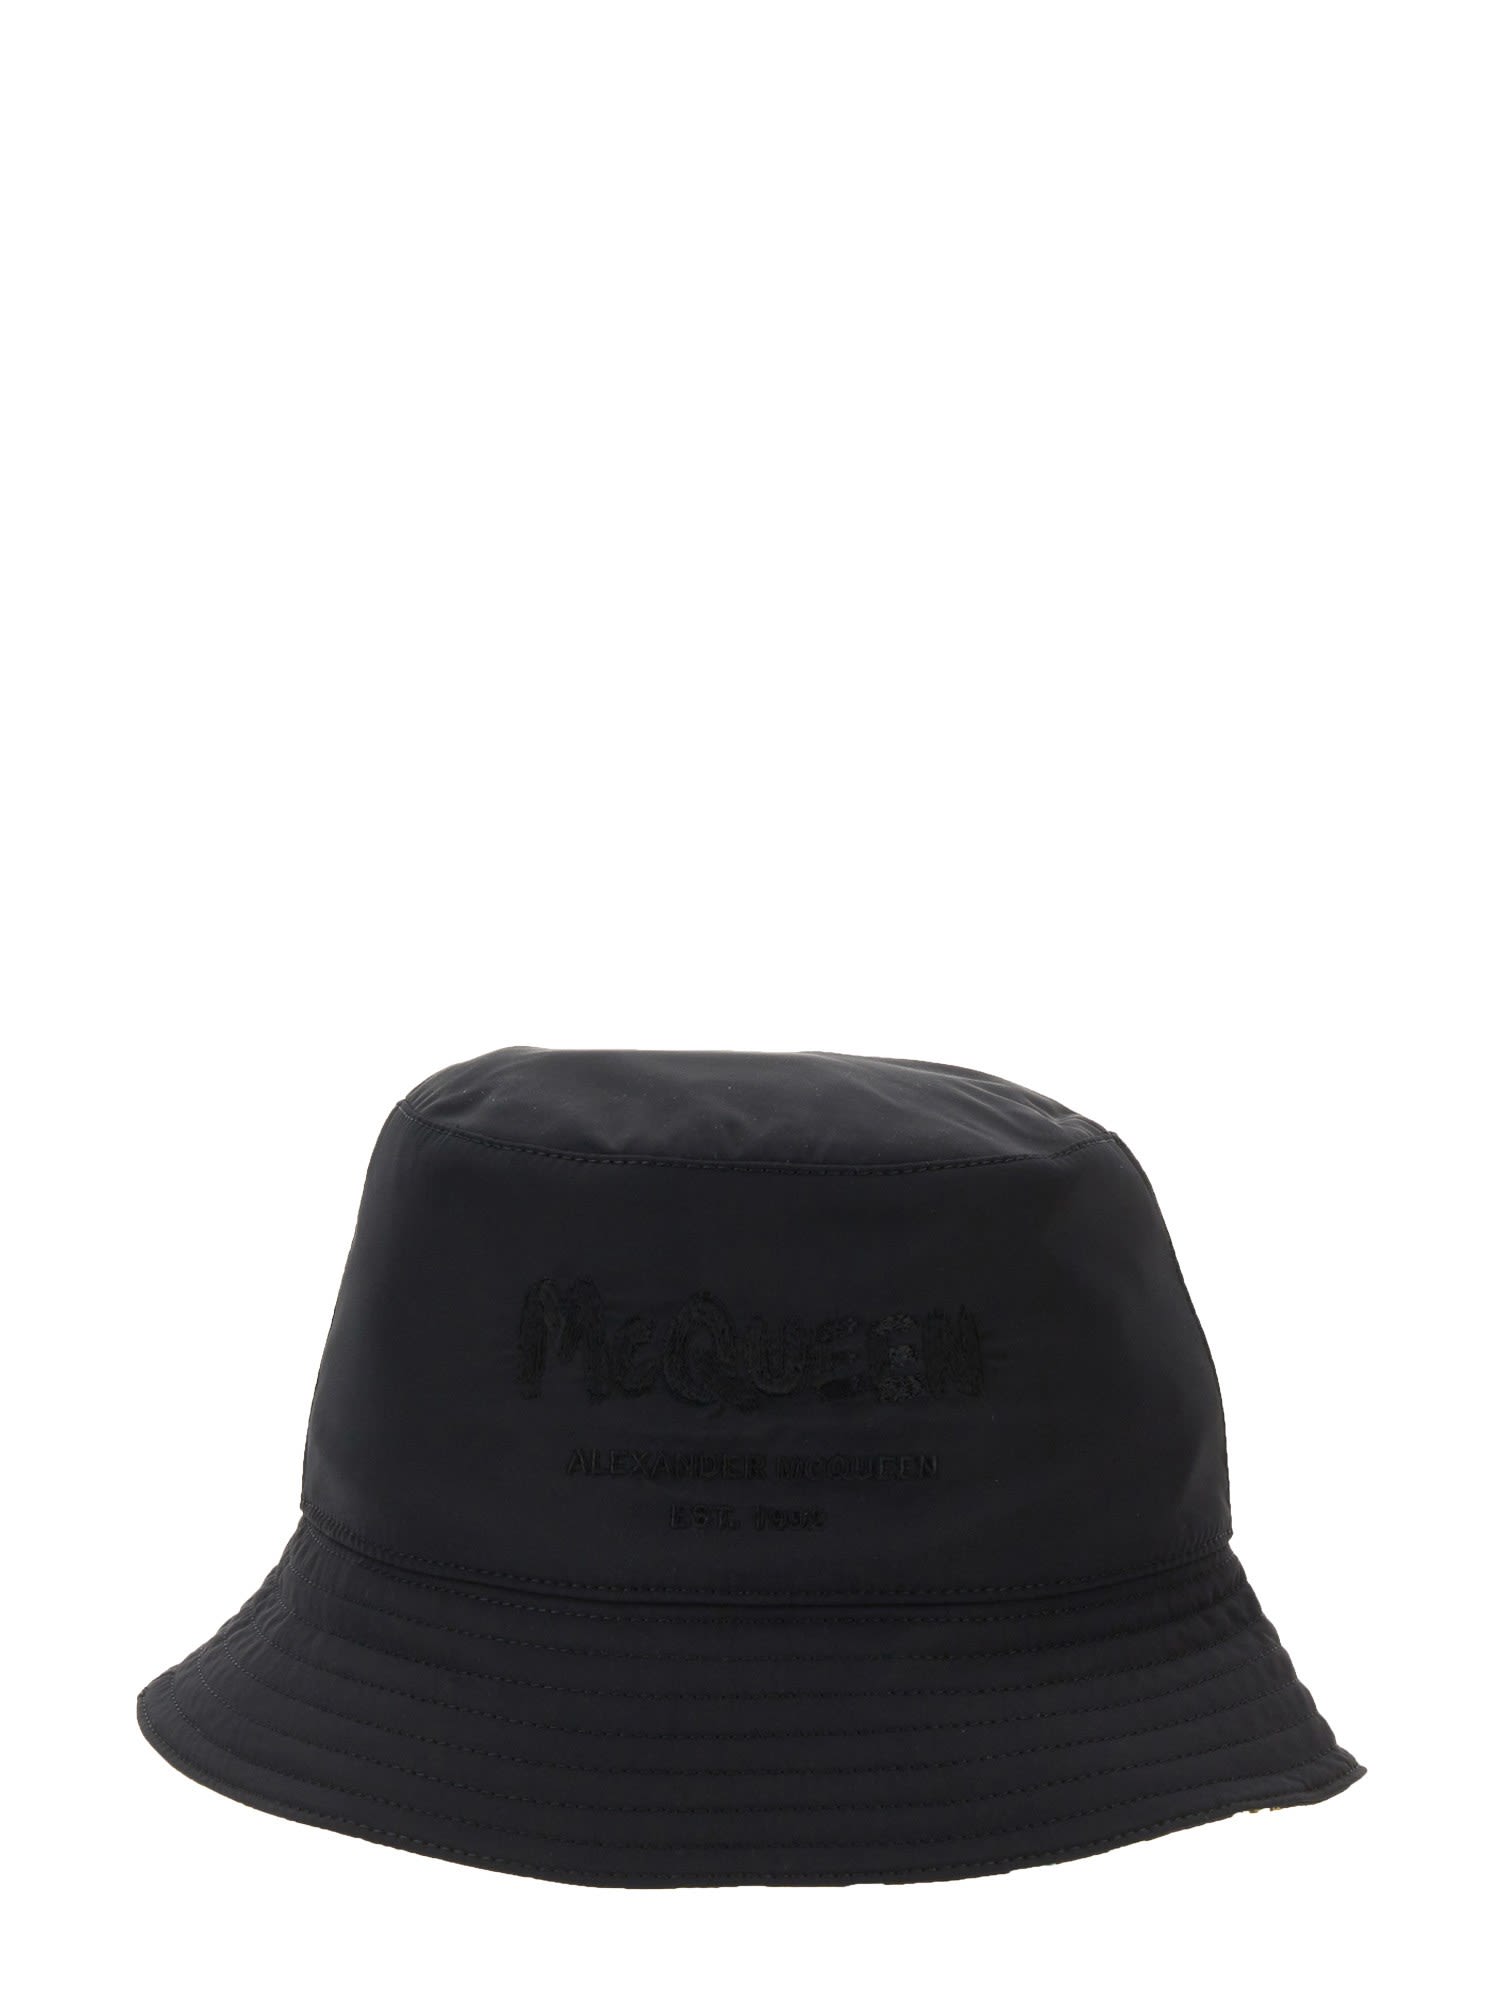 Alexander McQueen Reversible Bucket Hat | italist